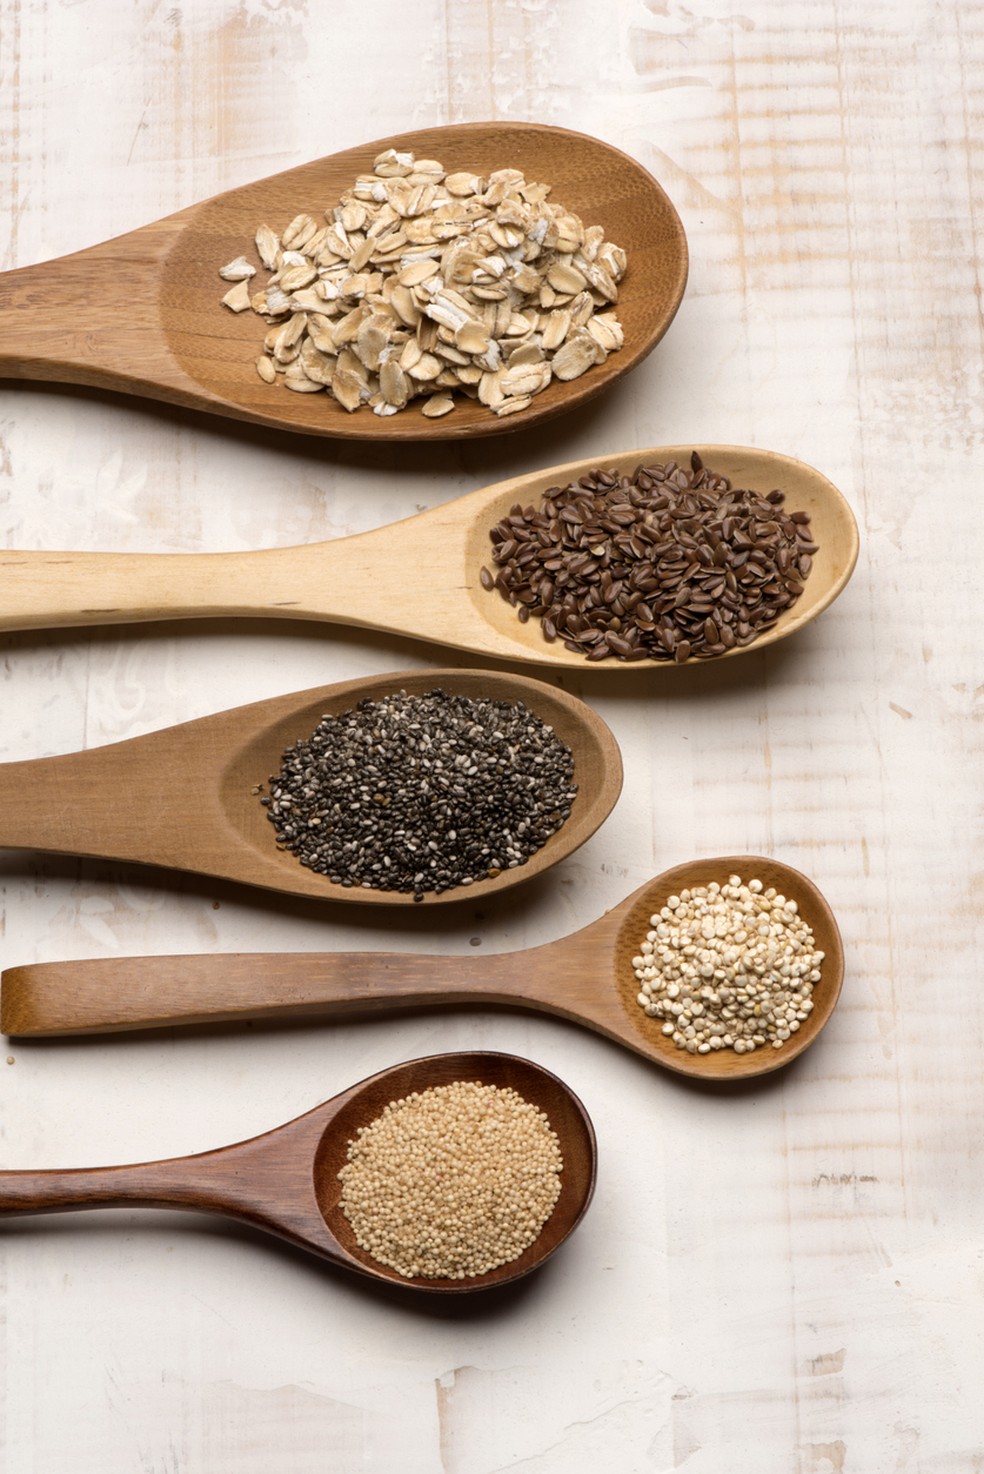 Aveia, linhaça, chia, quinoa e amaranto são exemplos de cereais e sementes ricos em fibras eu atleta — Foto: Istock Getty Images